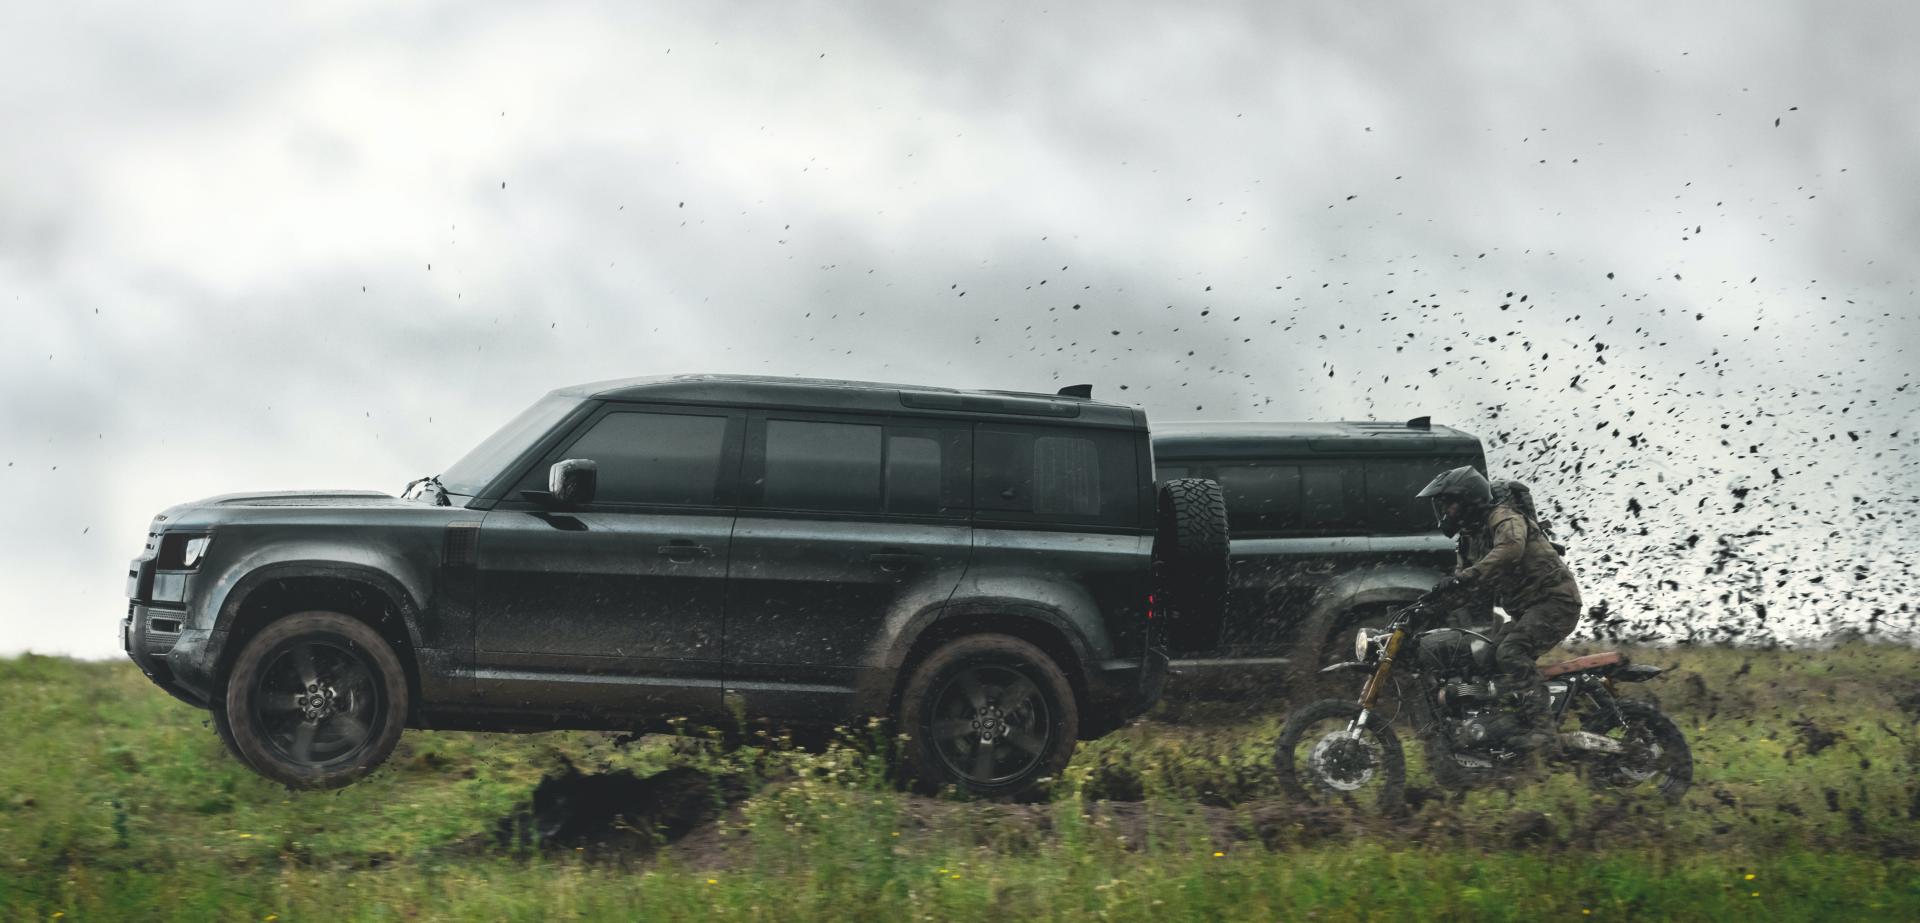 Video: Ngắm Land Rover Defender bay như chim trời trong trailer phim 007 mới